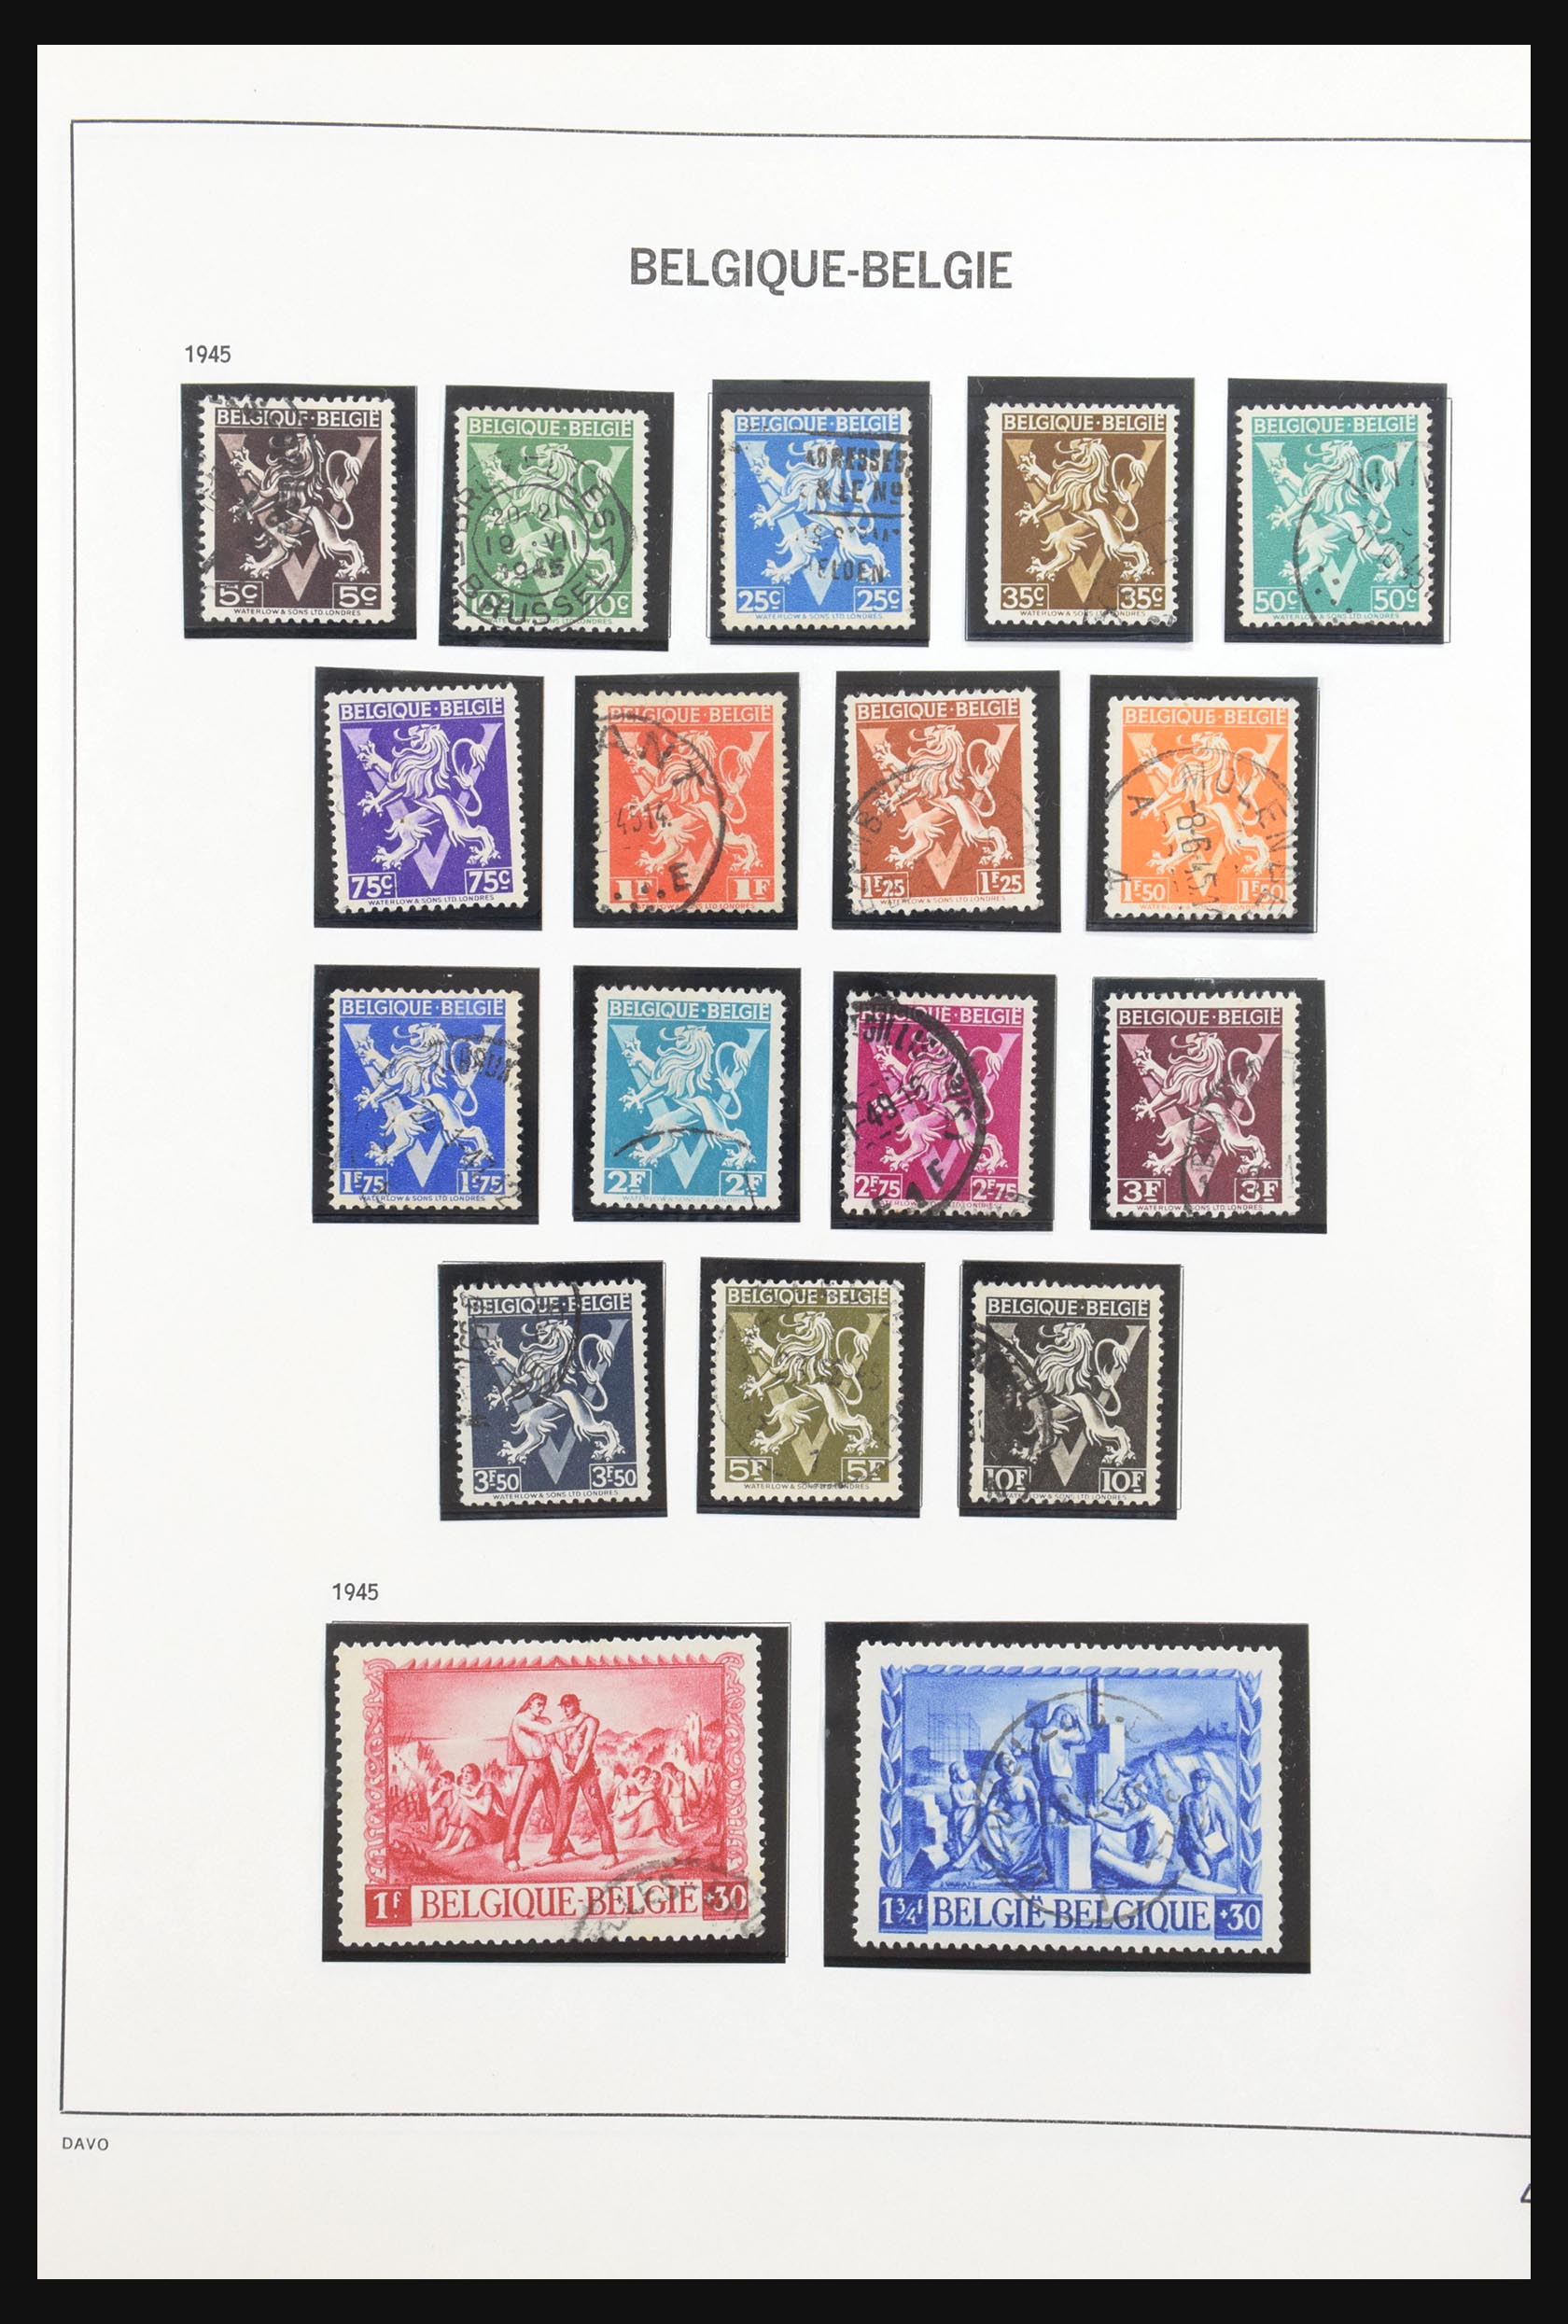 31178 148 - 31178 Belgium 1849-1951.